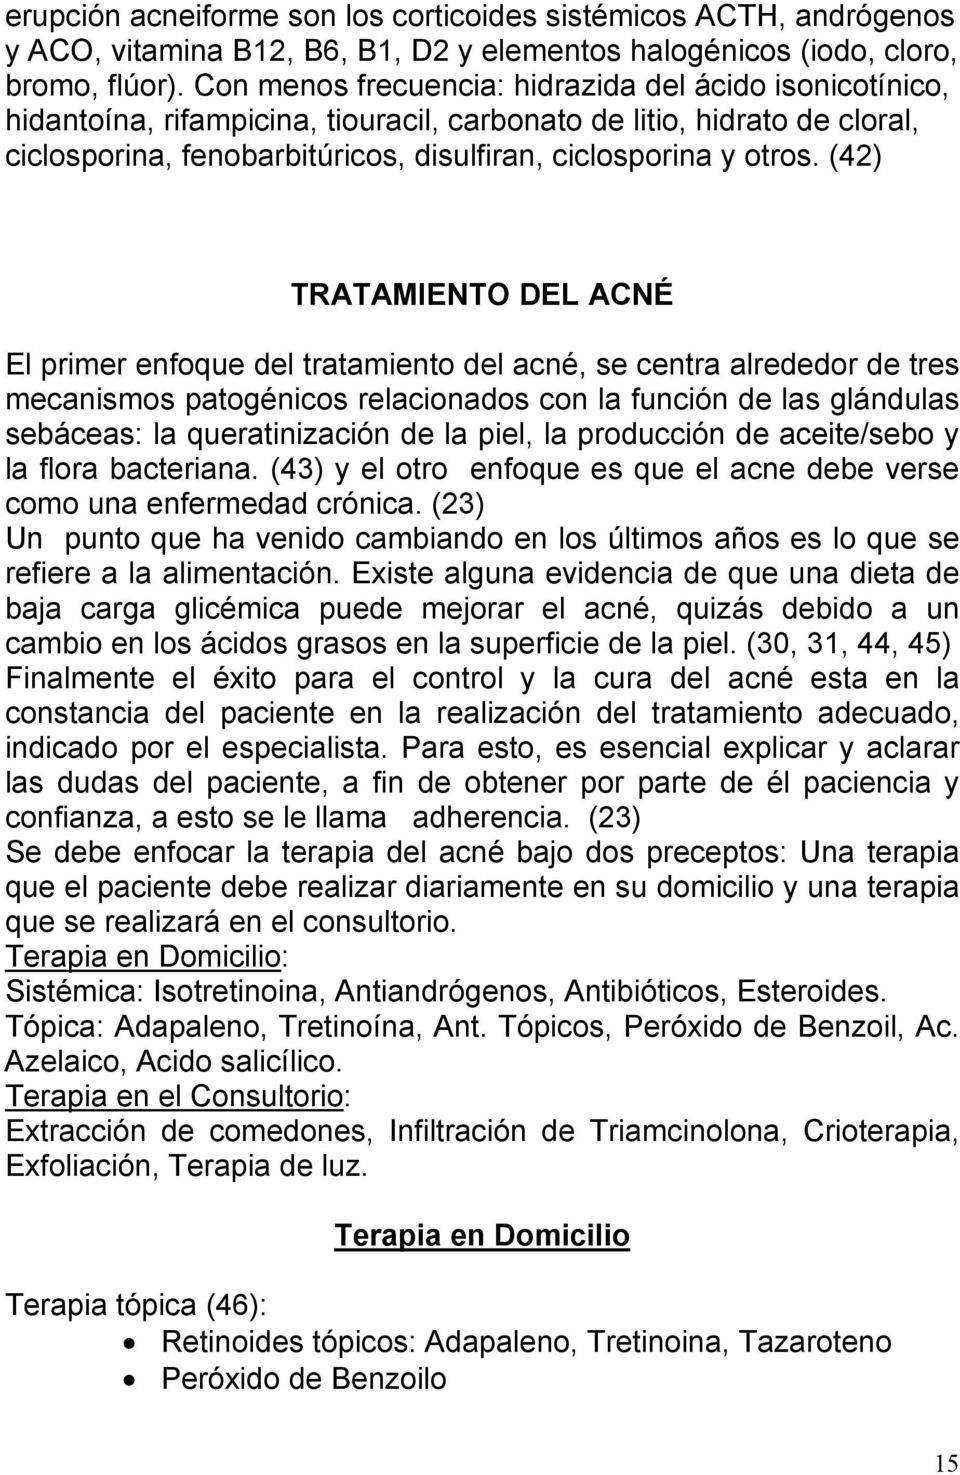 (42) TRATAMIENTO DEL ACNÉ El primer enfoque del tratamiento del acné, se centra alrededor de tres mecanismos patogénicos relacionados con la función de las glándulas sebáceas: la queratinización de